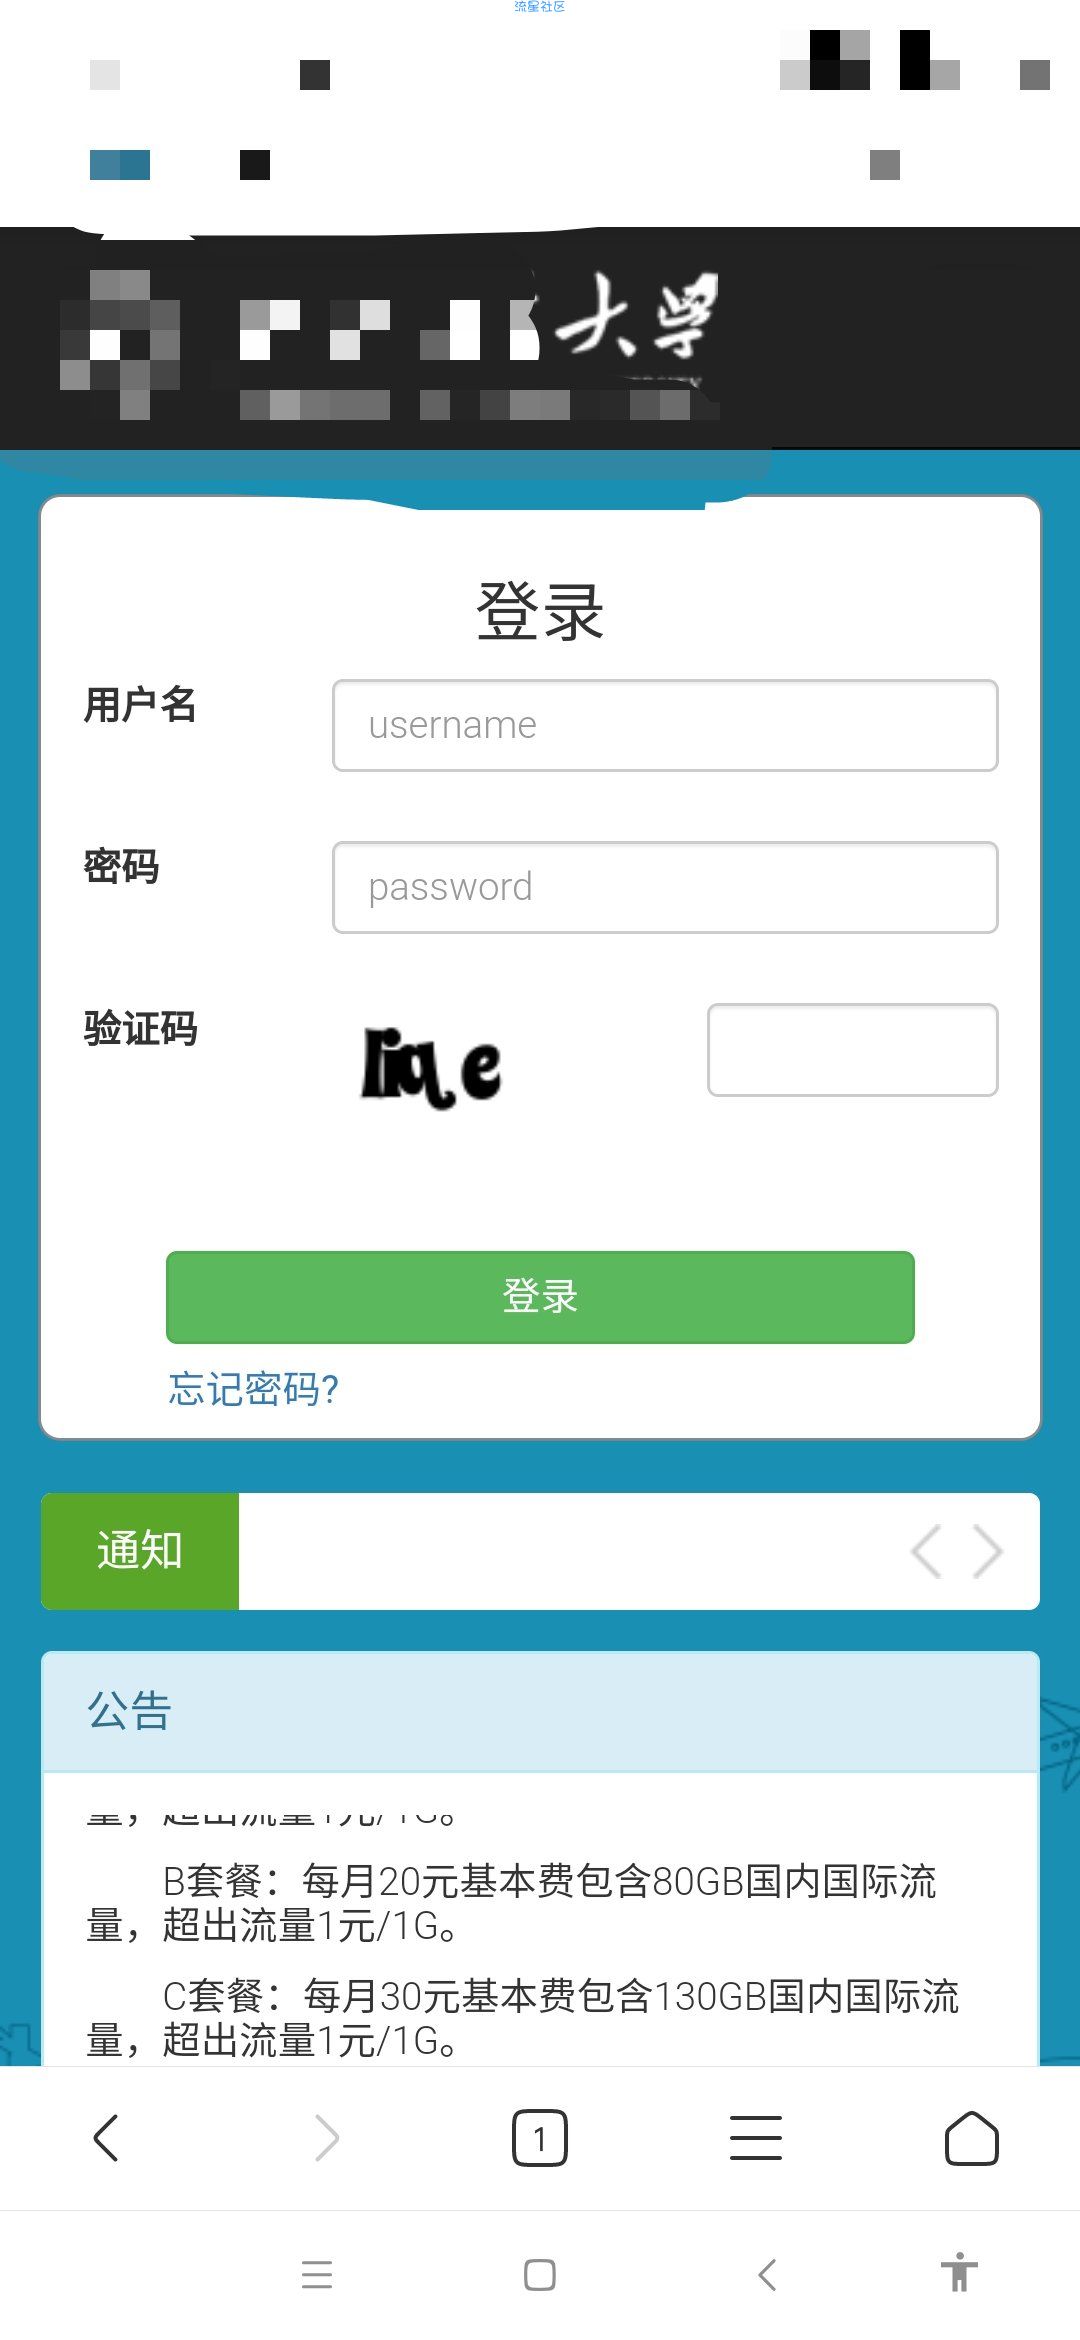 【天书教程】校园网破解免认证支持全设备ios,安卓-pc